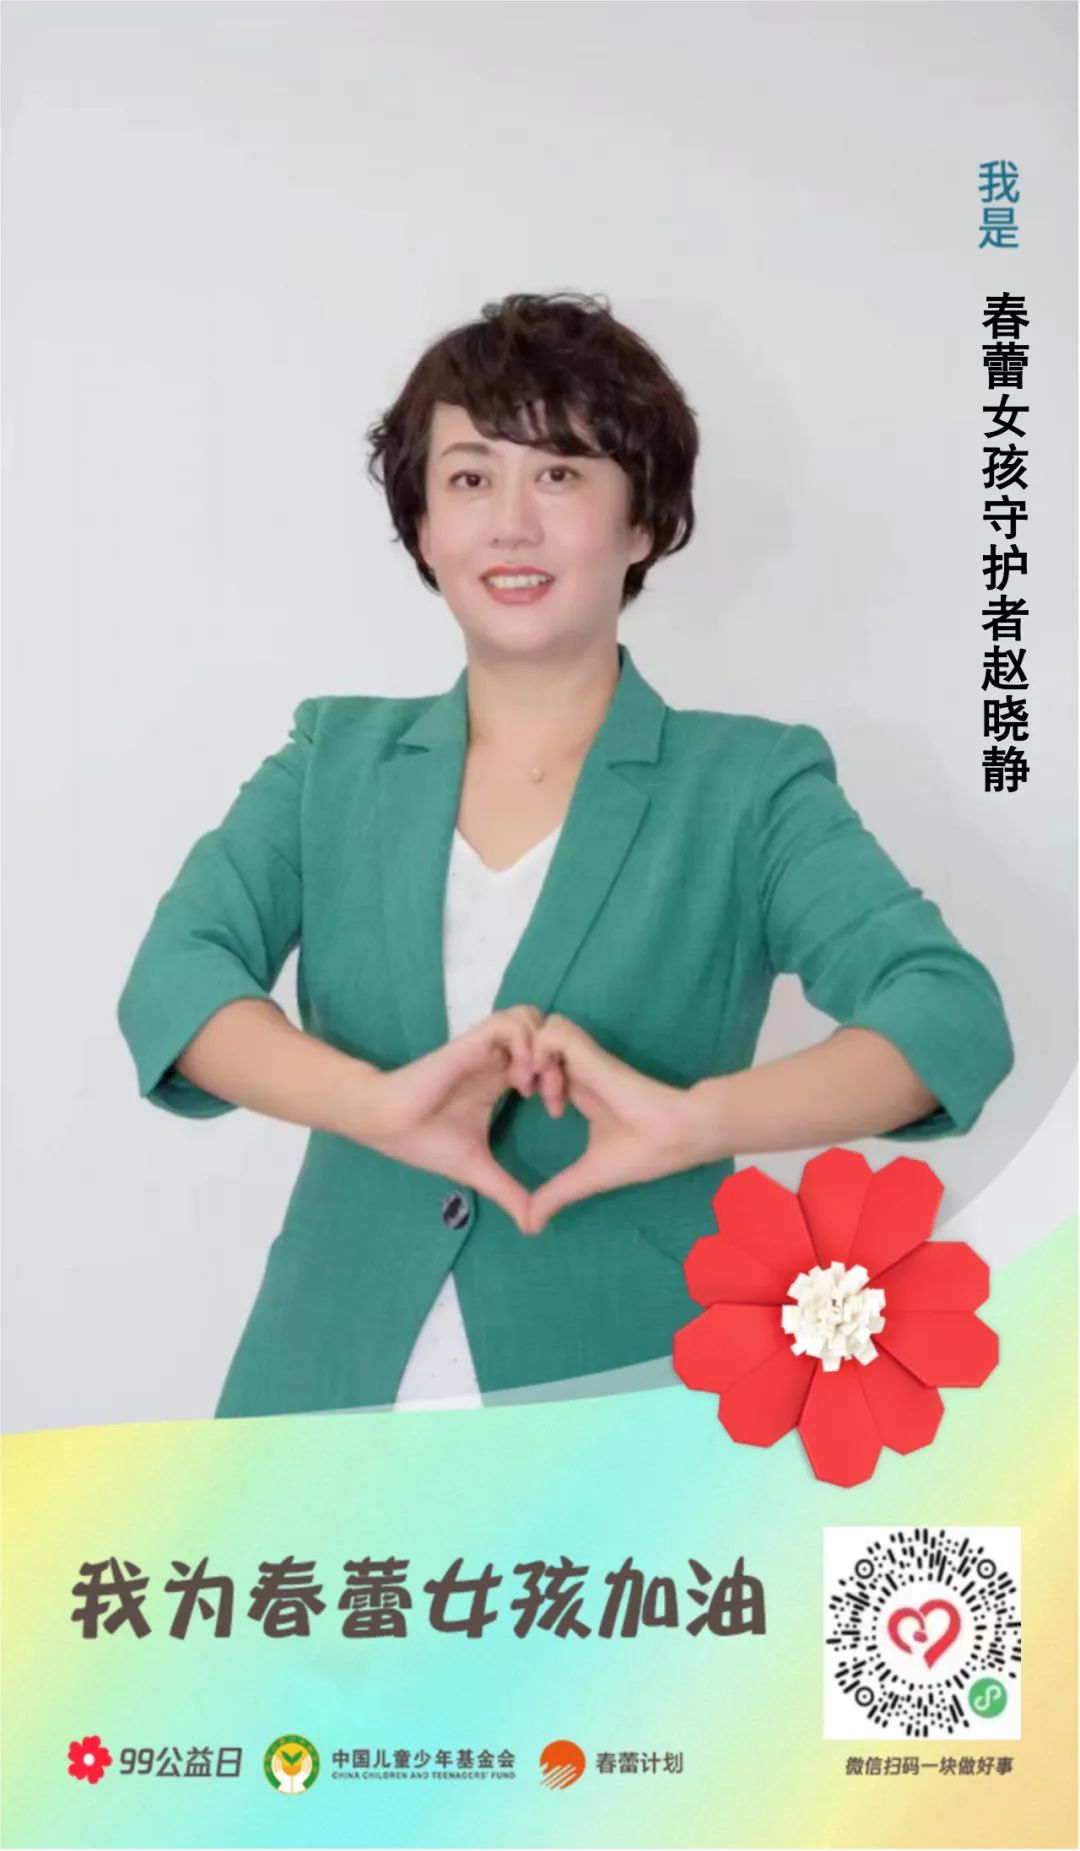 哈尔滨市妇联、香坊区妇联联合举办“春蕾计划 爱心护学”助学行动资金发放仪式 - 国际在线移动版